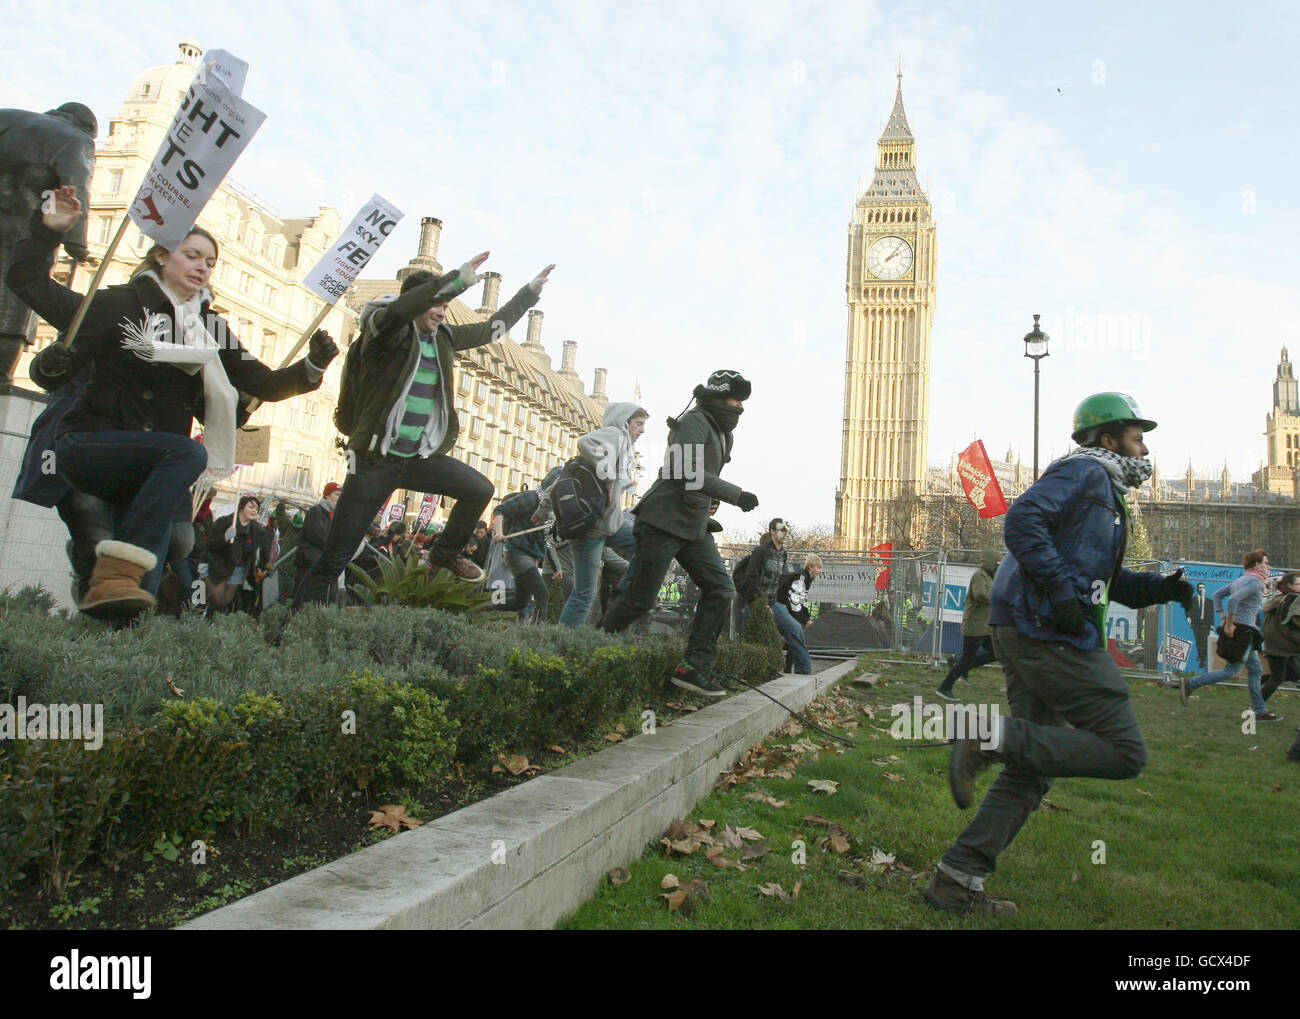 Des manifestants se sont frainés un tour sur la place du Parlement après avoir abaissé les barrières, comme les étudiants le démontrent à Westminster, à Londres, contre les augmentations prévues des frais de scolarité. Banque D'Images